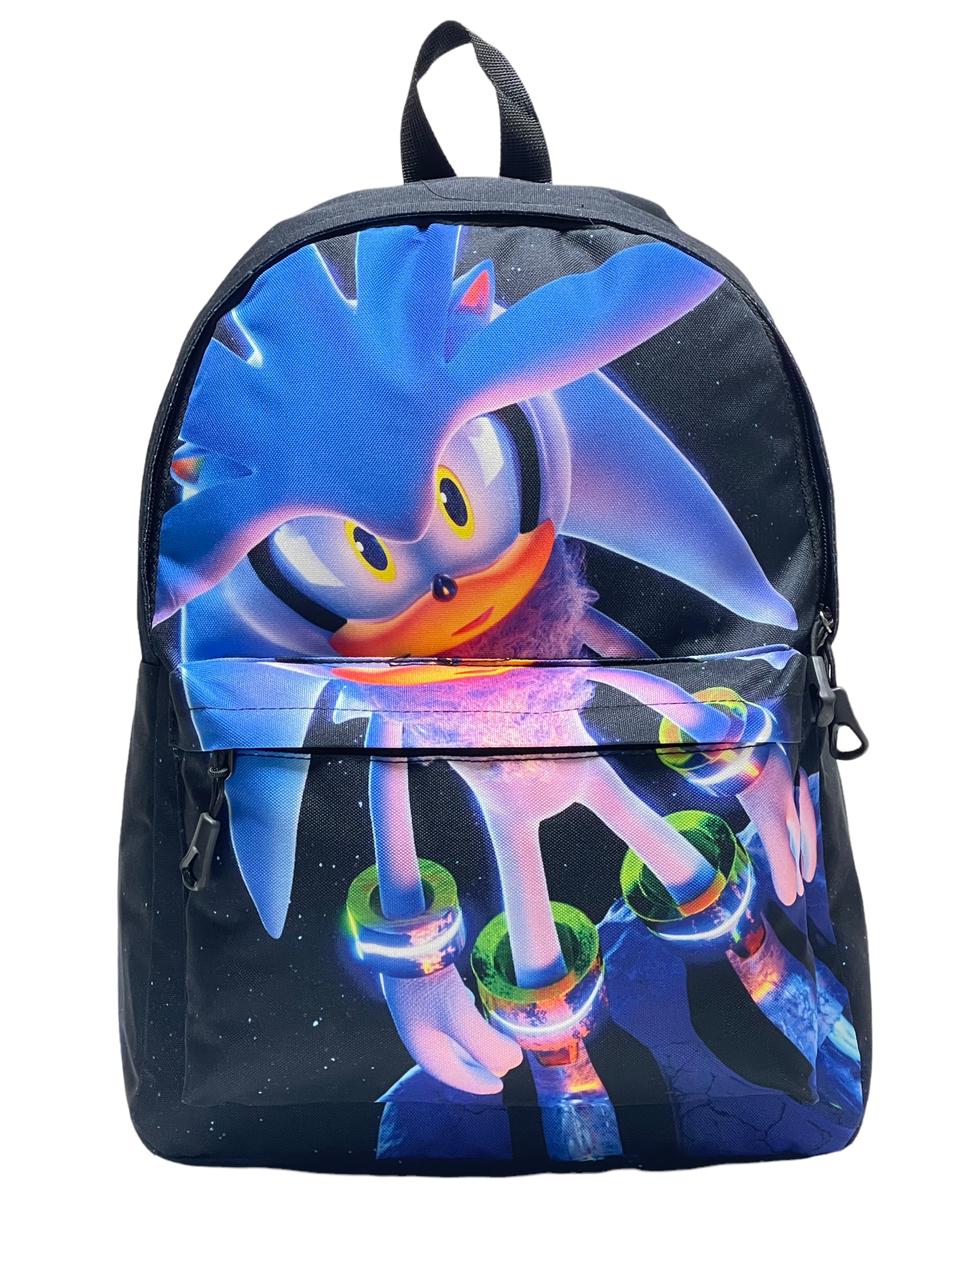 Рюкзак для детей и подростков BAGS-ART большого размера Sonic, голубой, черный